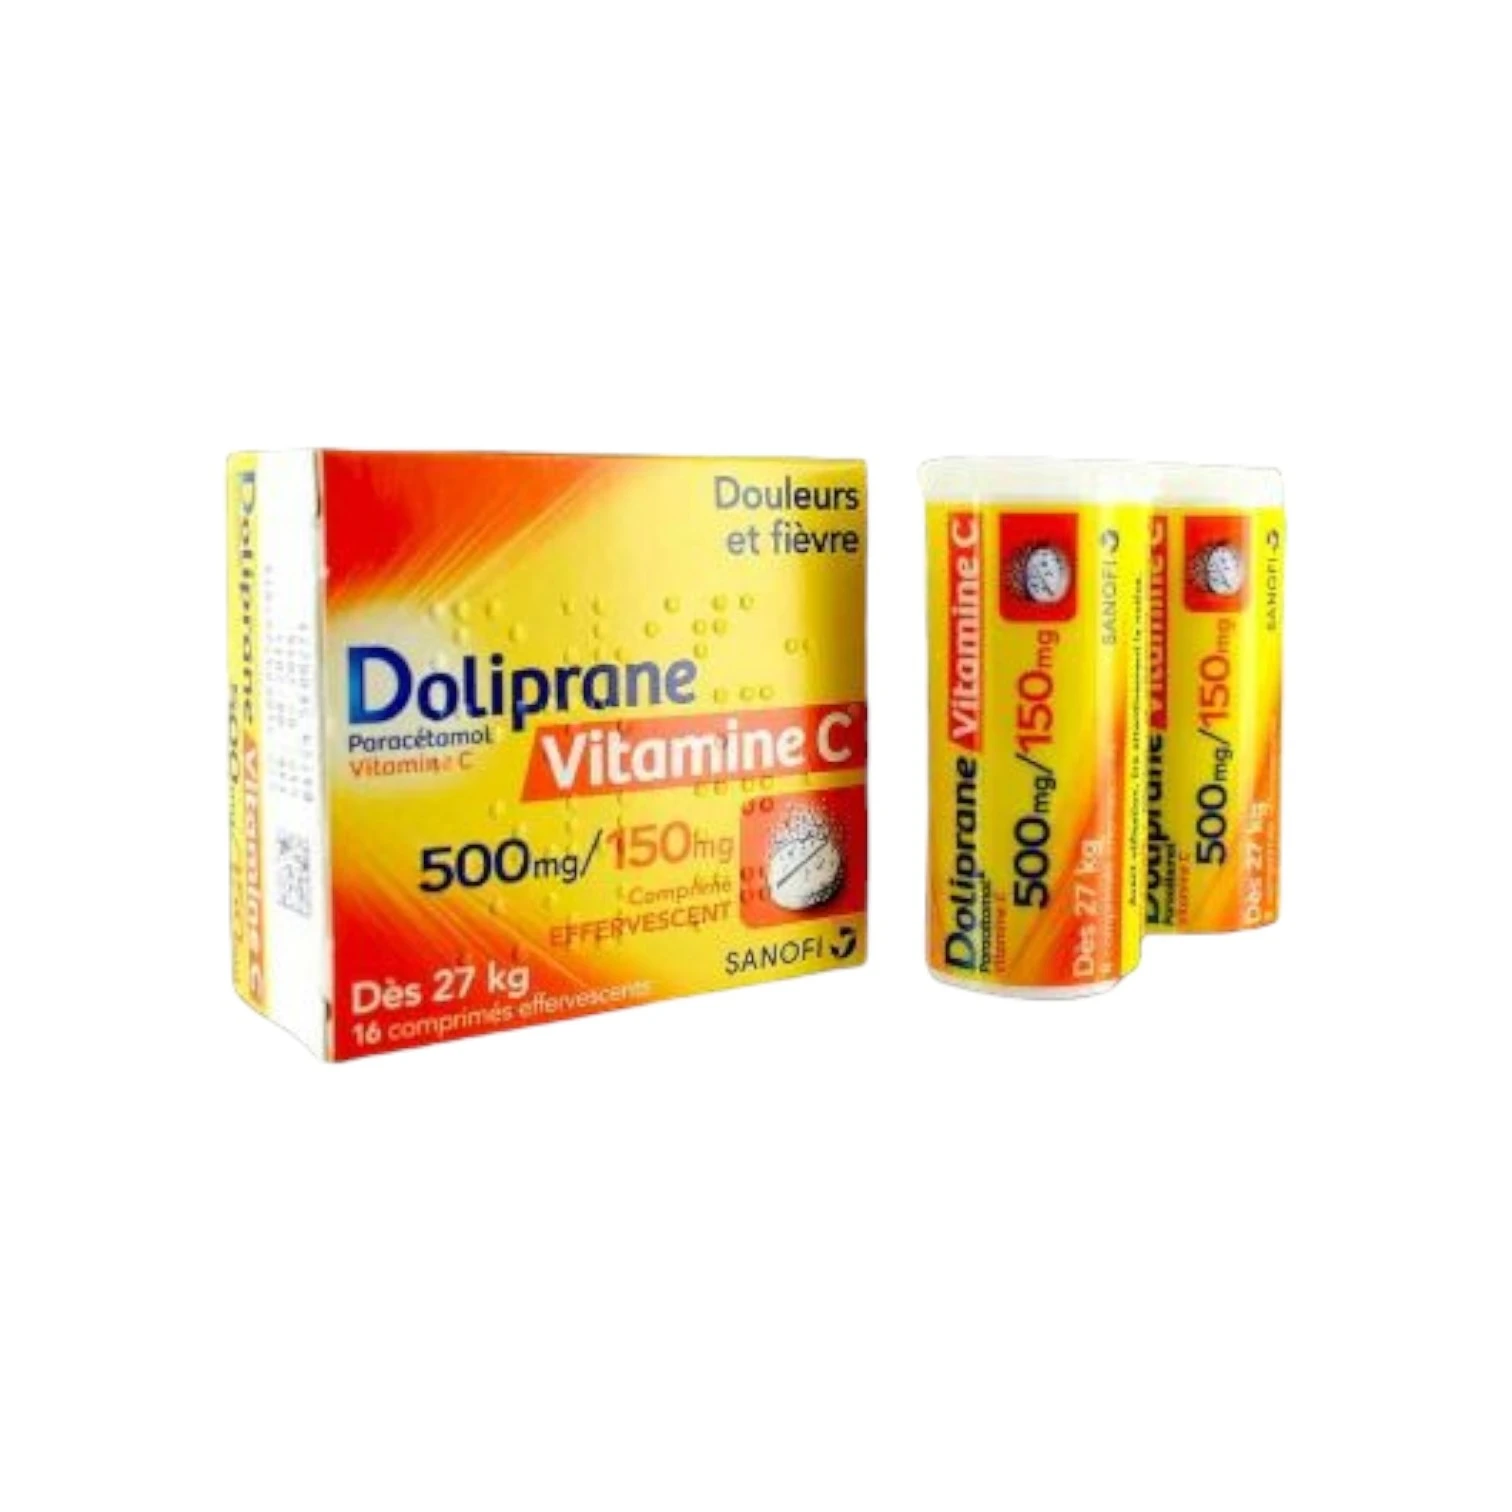 Doliprane 500mg + VitaminC 150mg 16Com Effe x 2Tube/Box (CP)